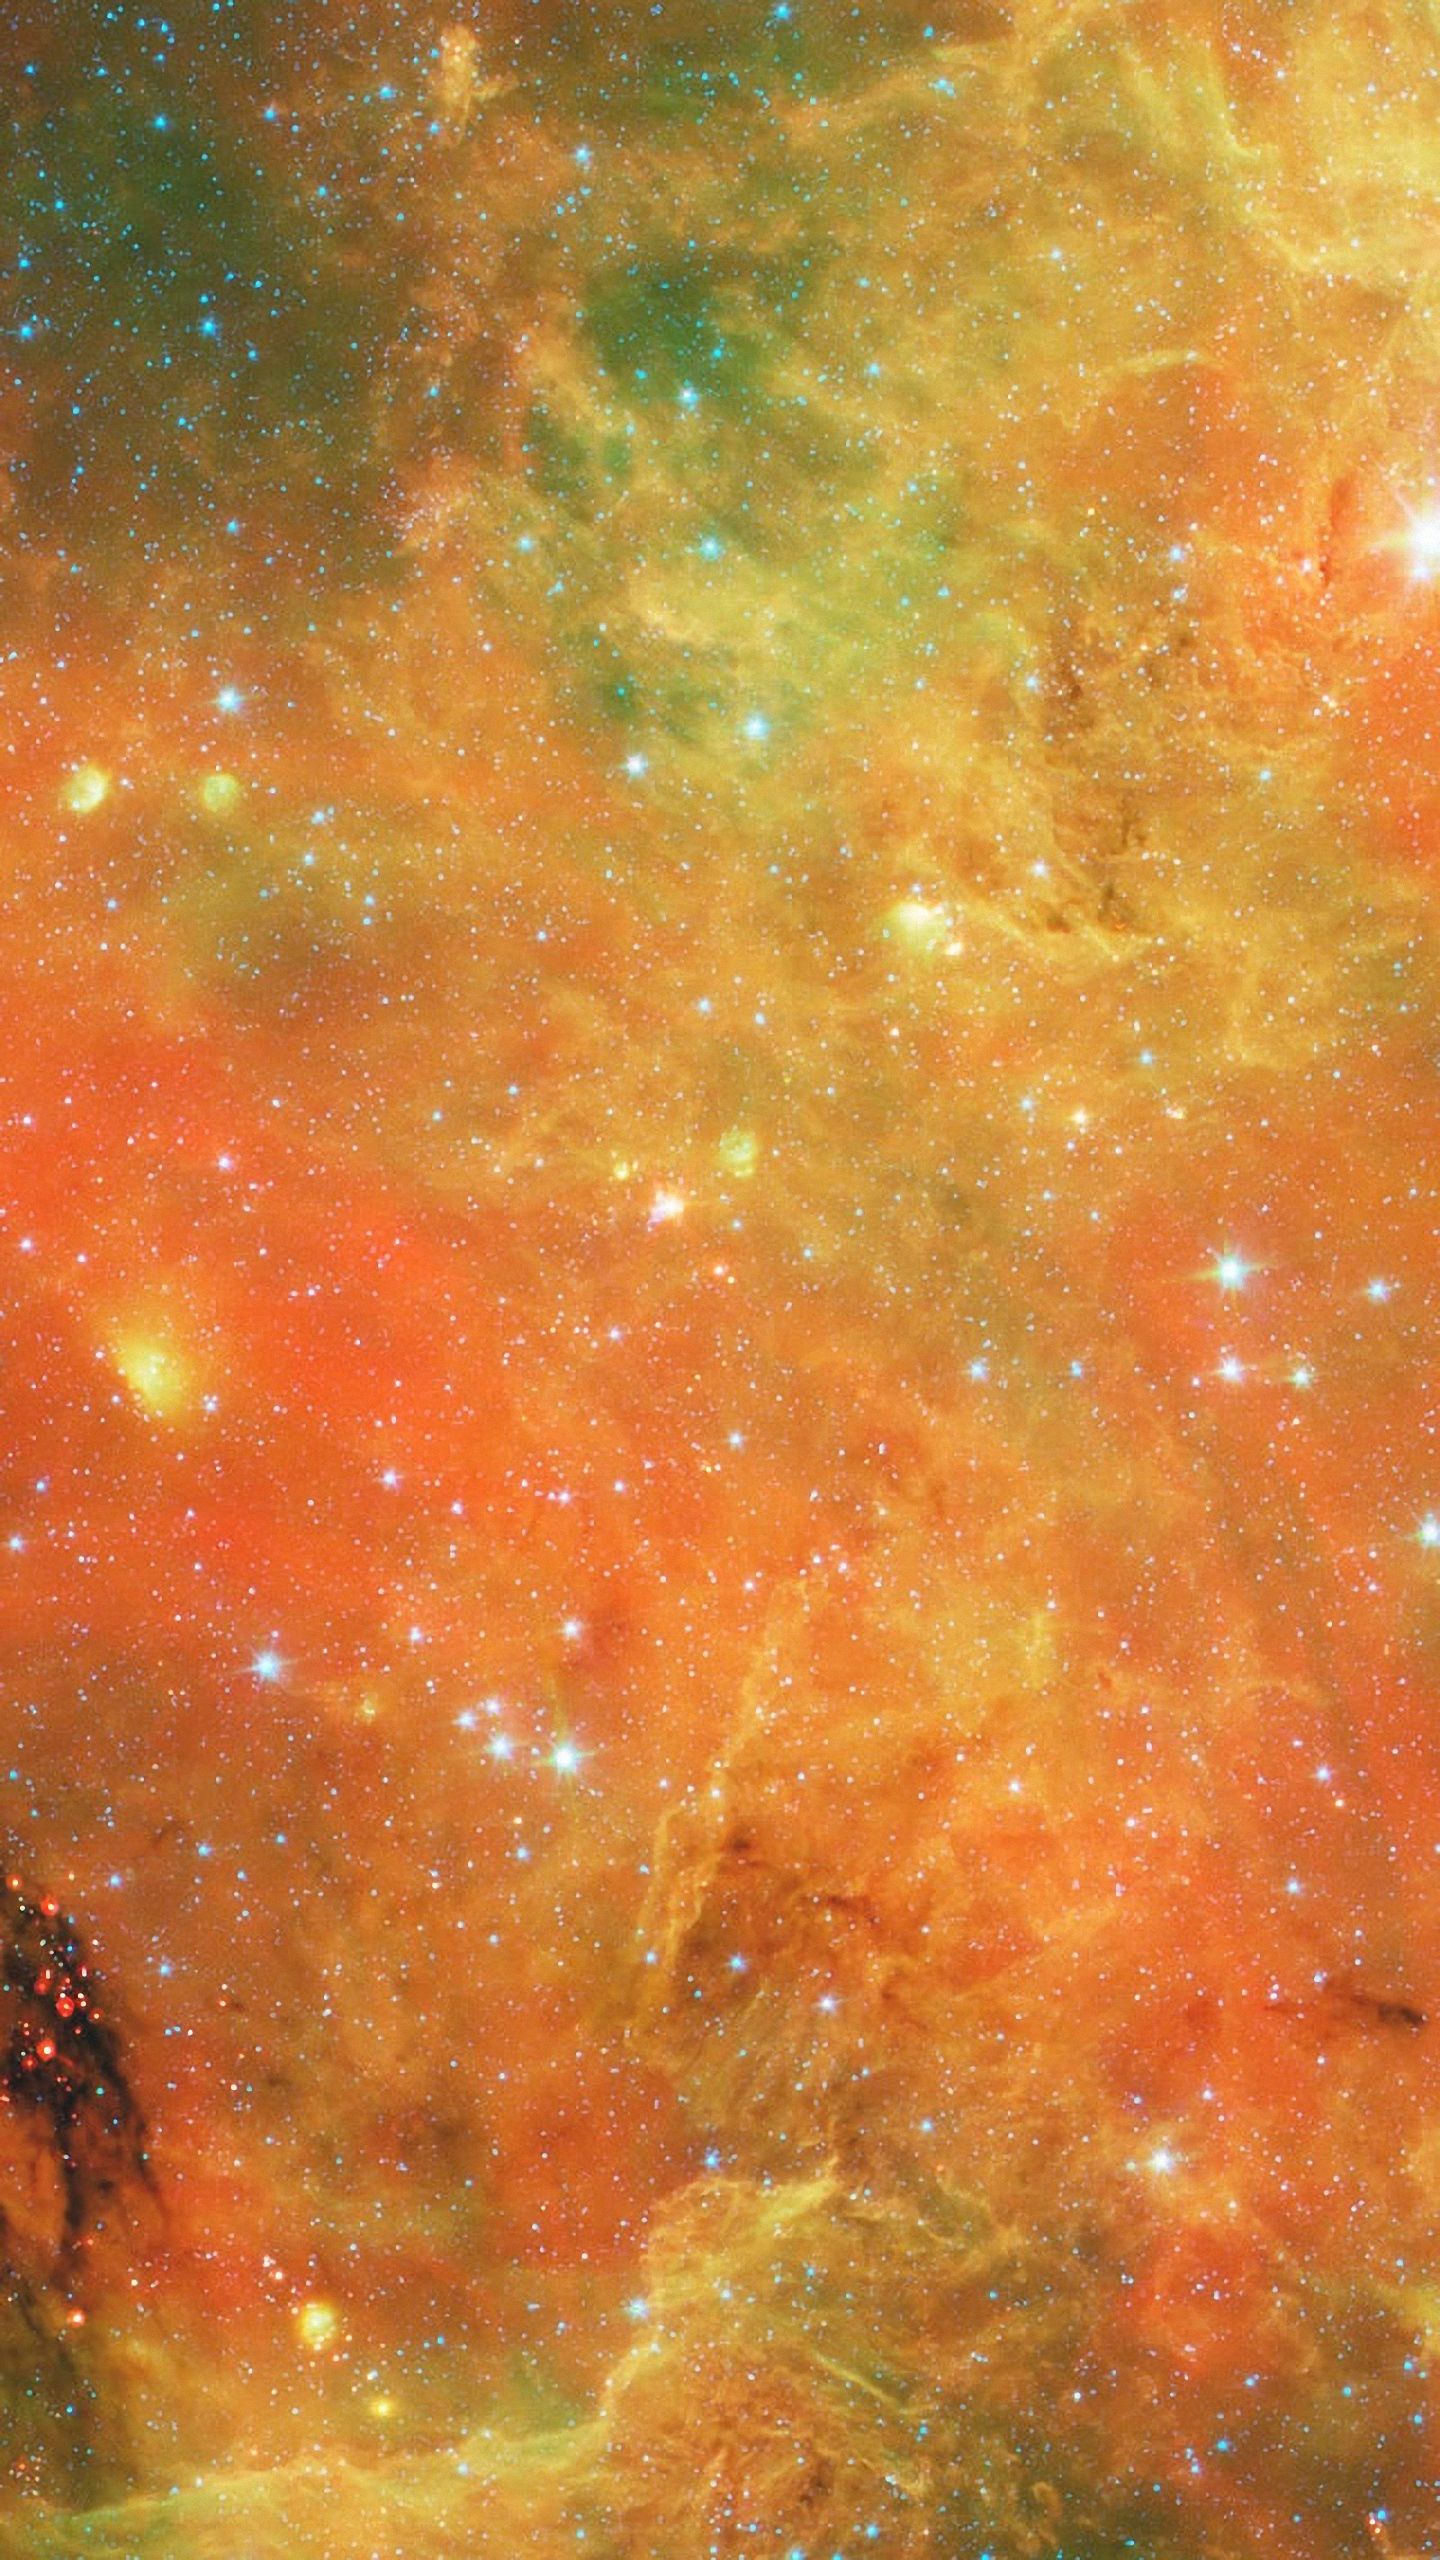 resolution image Nebula htc desire Wallpaper HD 1440x2560. Galaxy wallpaper, Galaxy background, Nebula wallpaper